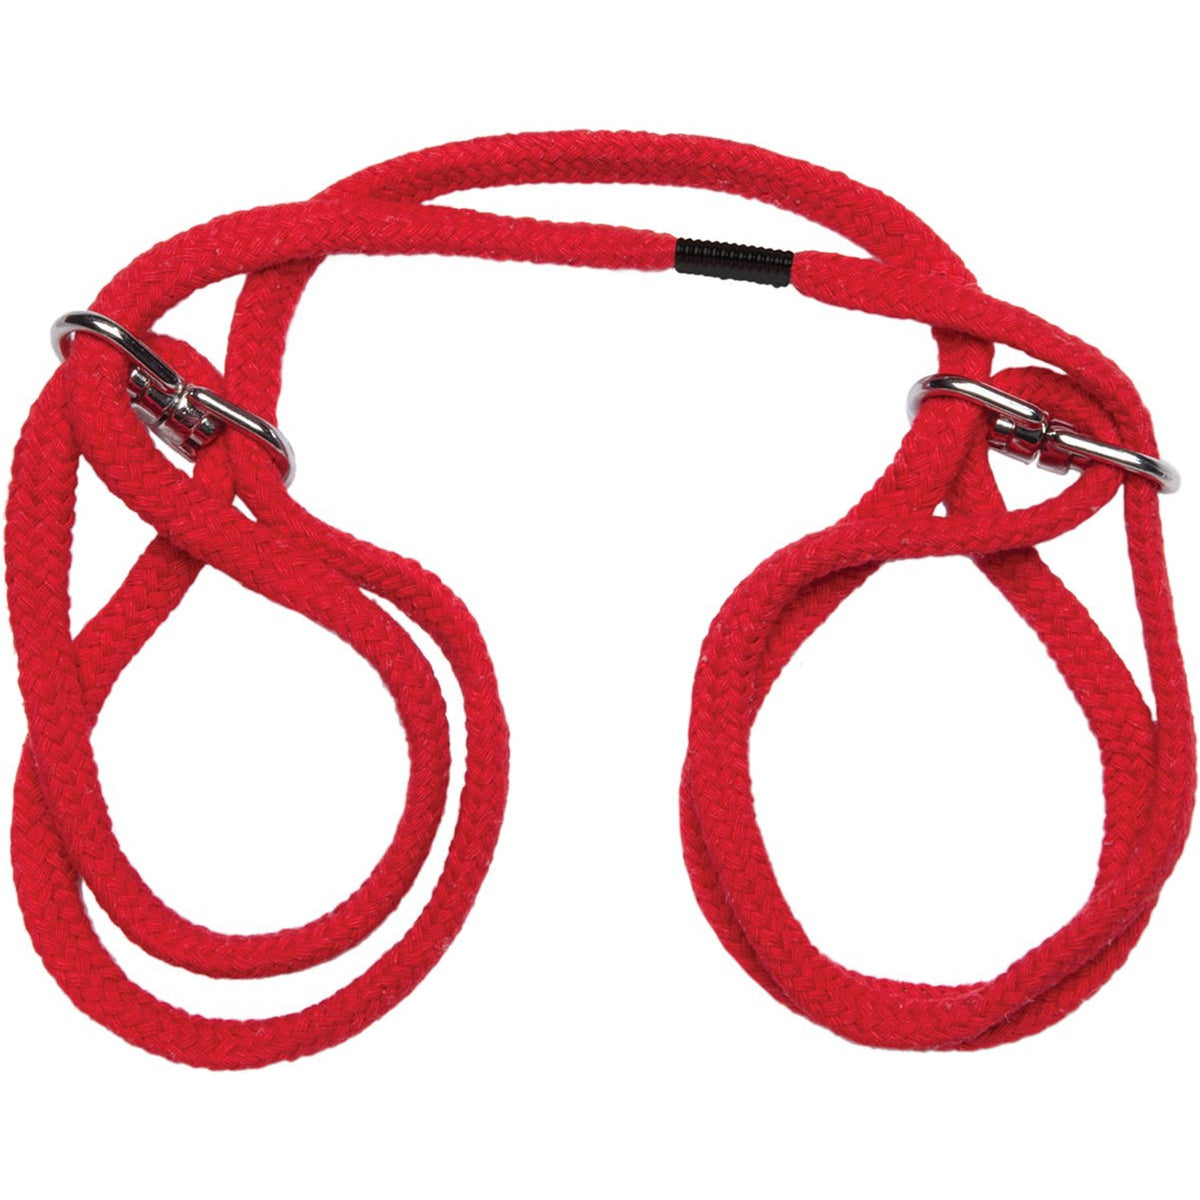 Doc Johnson Japanese Style Bondage – Cotton Bondage Wrist or Ankle Rope Cuffs - Red